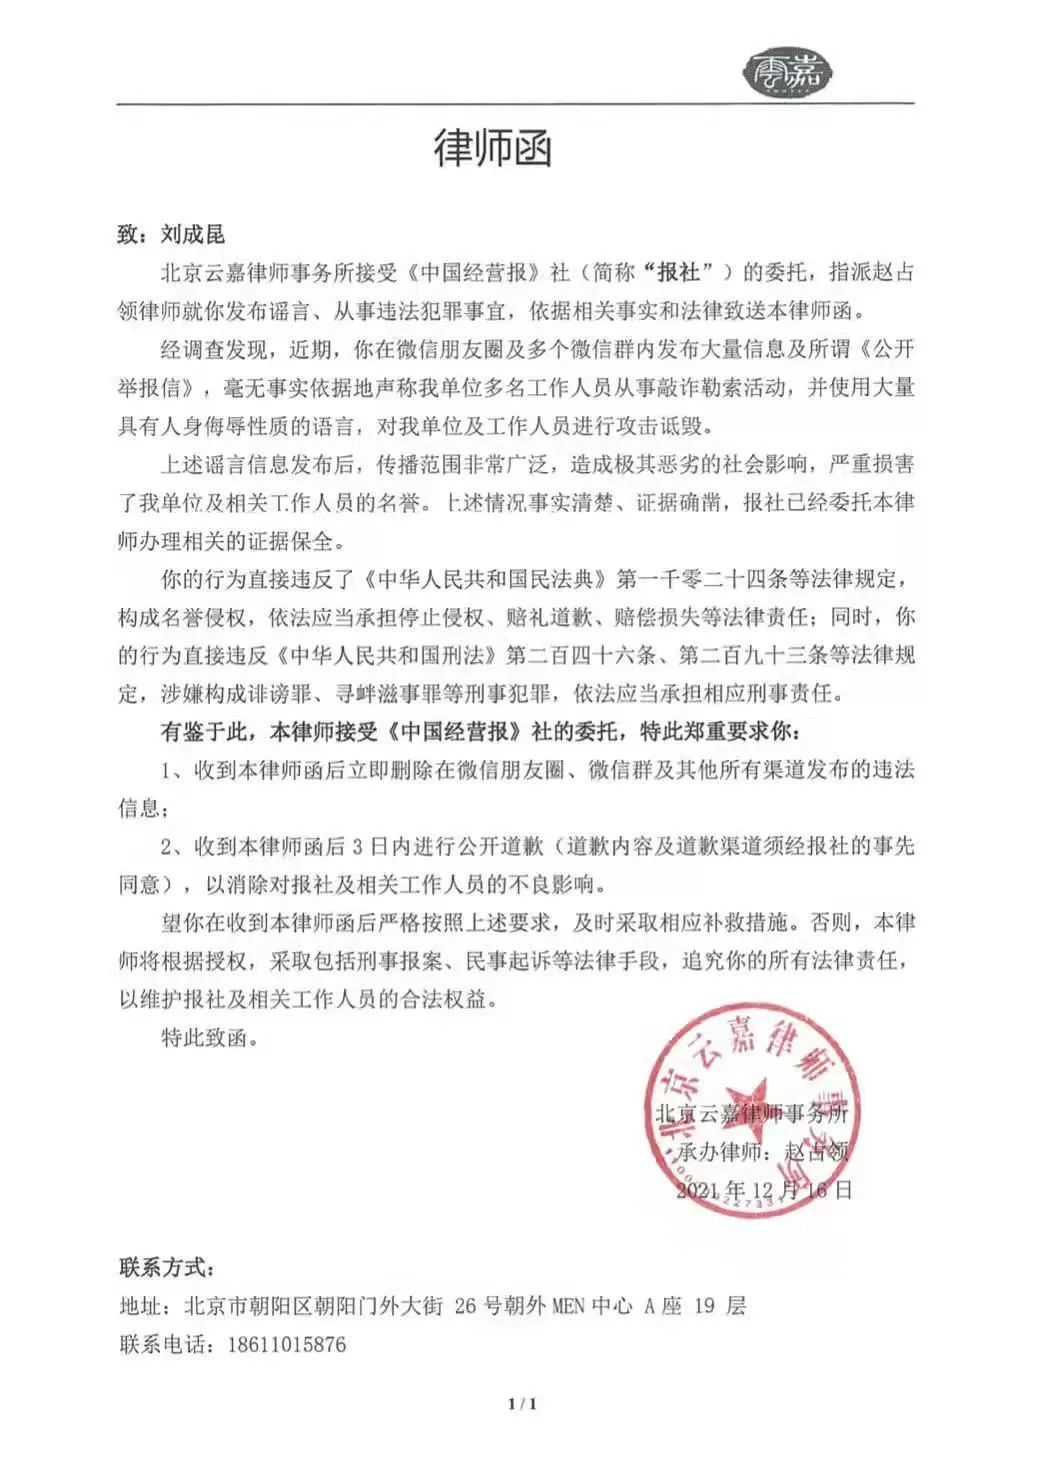 《中国经营报》多位高层遭举报 传总编辑已被控